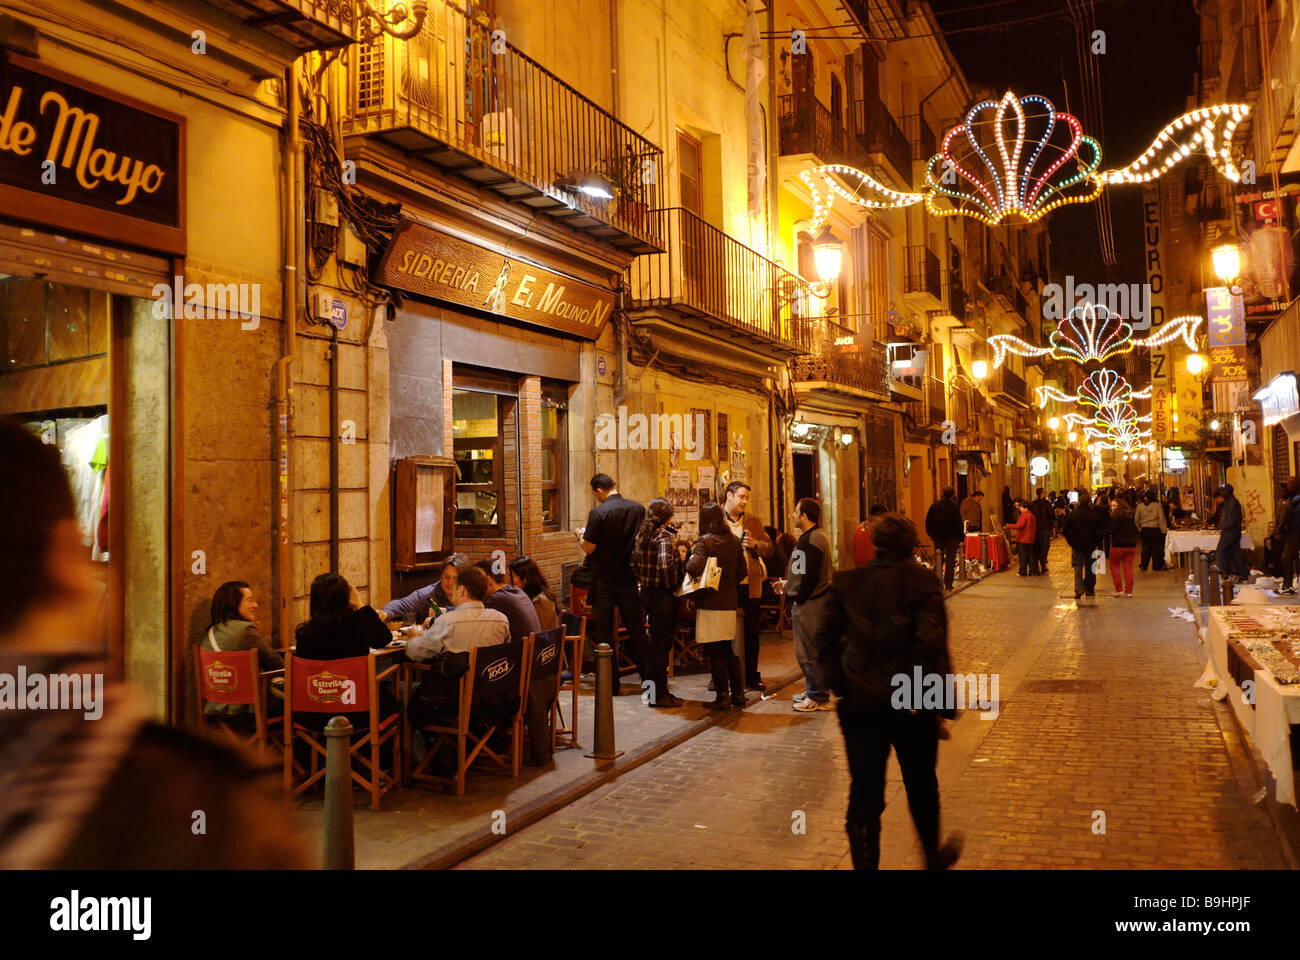 Beschäftigt Straßenszene in El Carmen während Las Fallas Festival historische Stadtzentrum von Valencia, Spanien Stockfoto